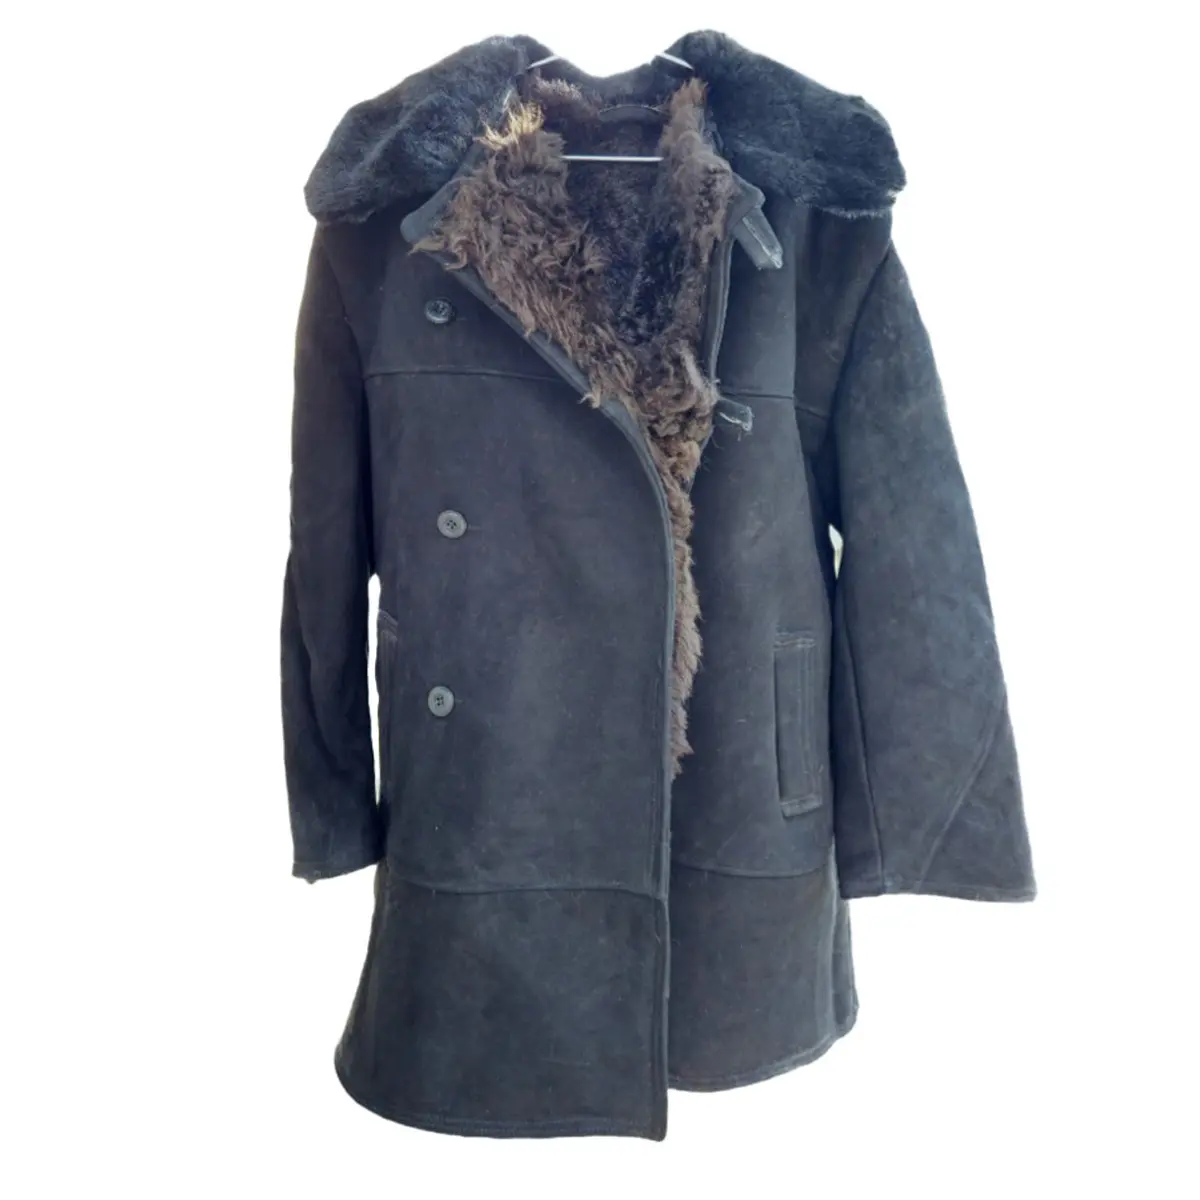 सर्दियों चर्मपत्र कोट "polushubka" निर्माता कीमतों सर्दियों कोट के लिए बिक्री